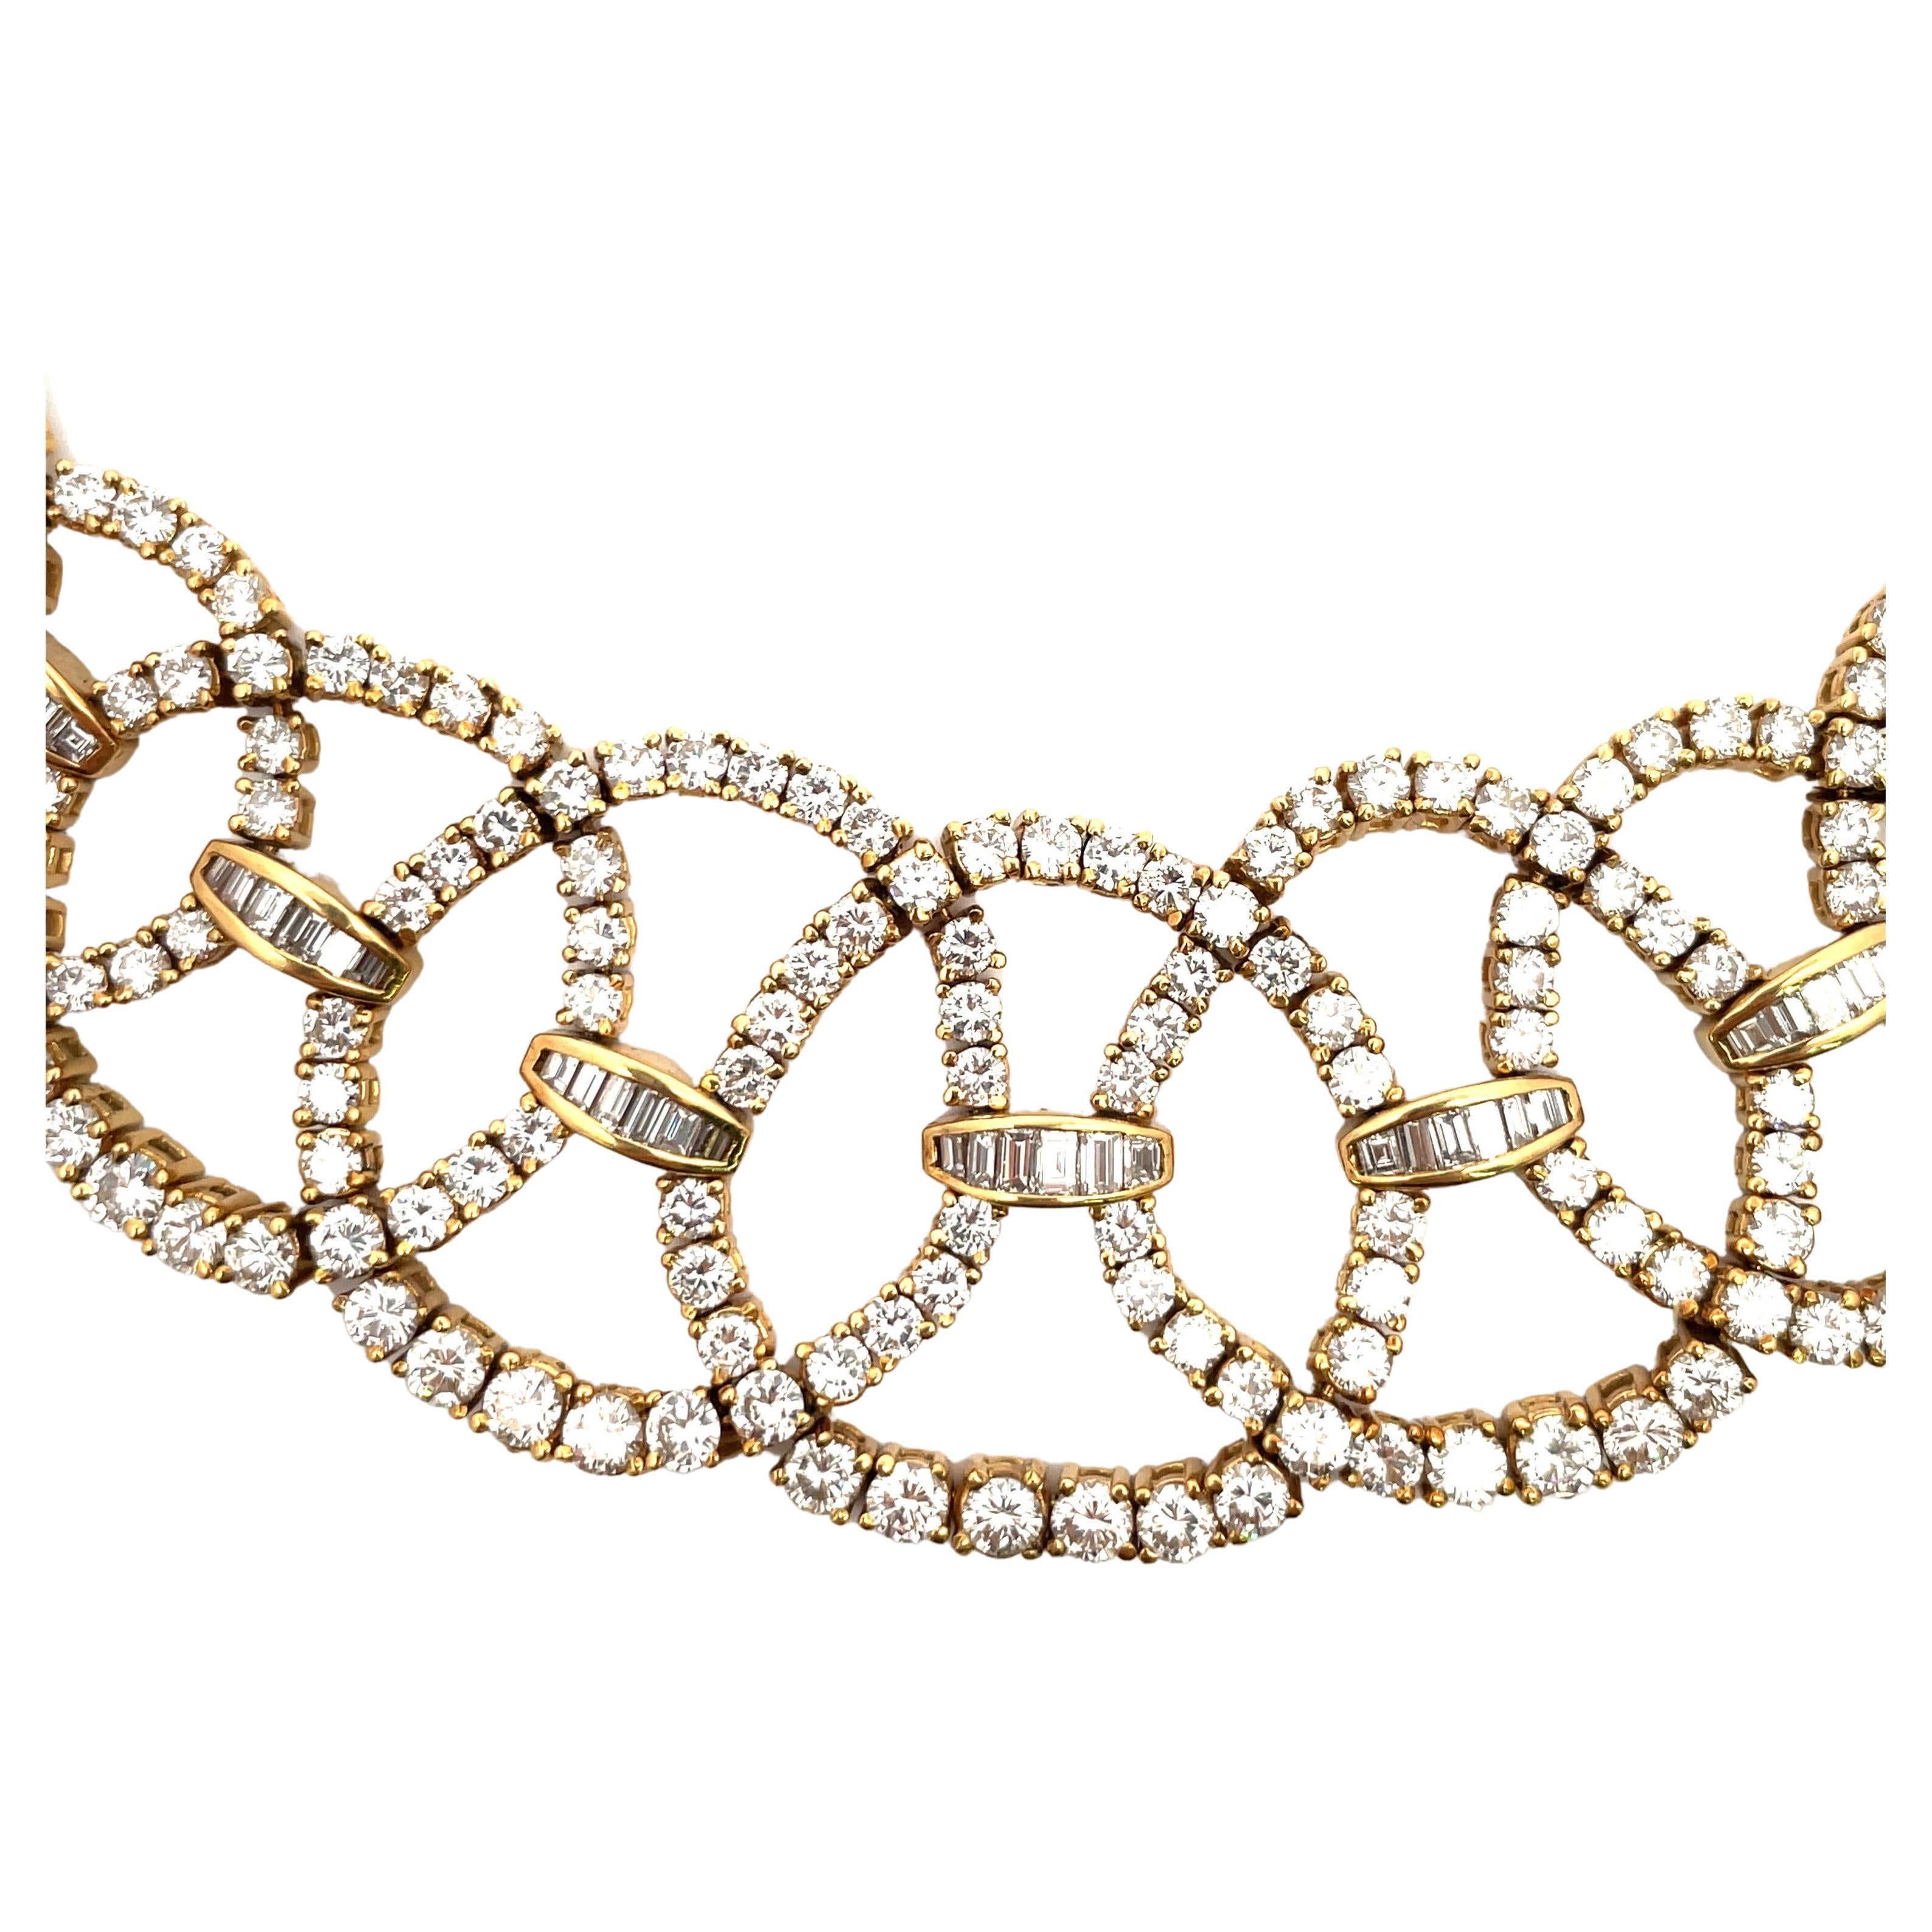 Circa 1950s Diamond Collar Necklace 45 Carats 18 Karat Yellow Gold For Sale 1